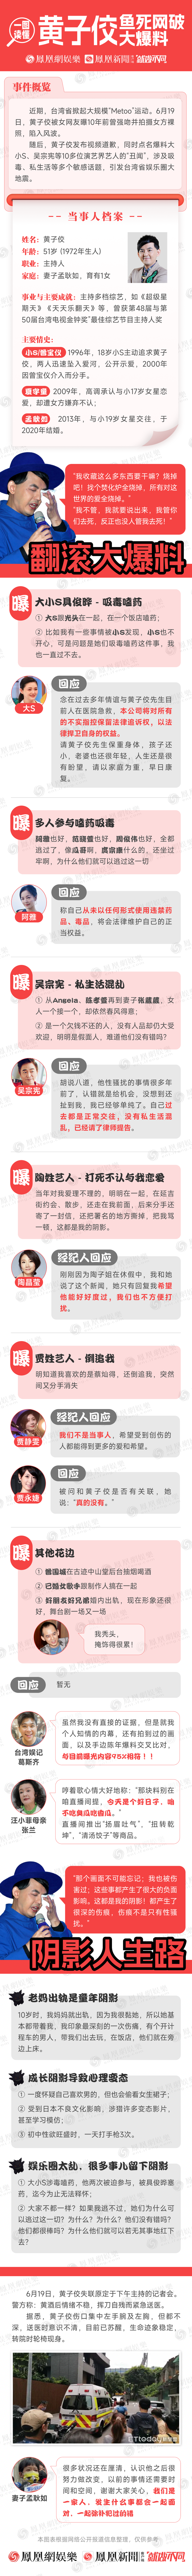 10多位台湾艺人丑闻遭曝光丨一图读懂黄子佼爆料始末